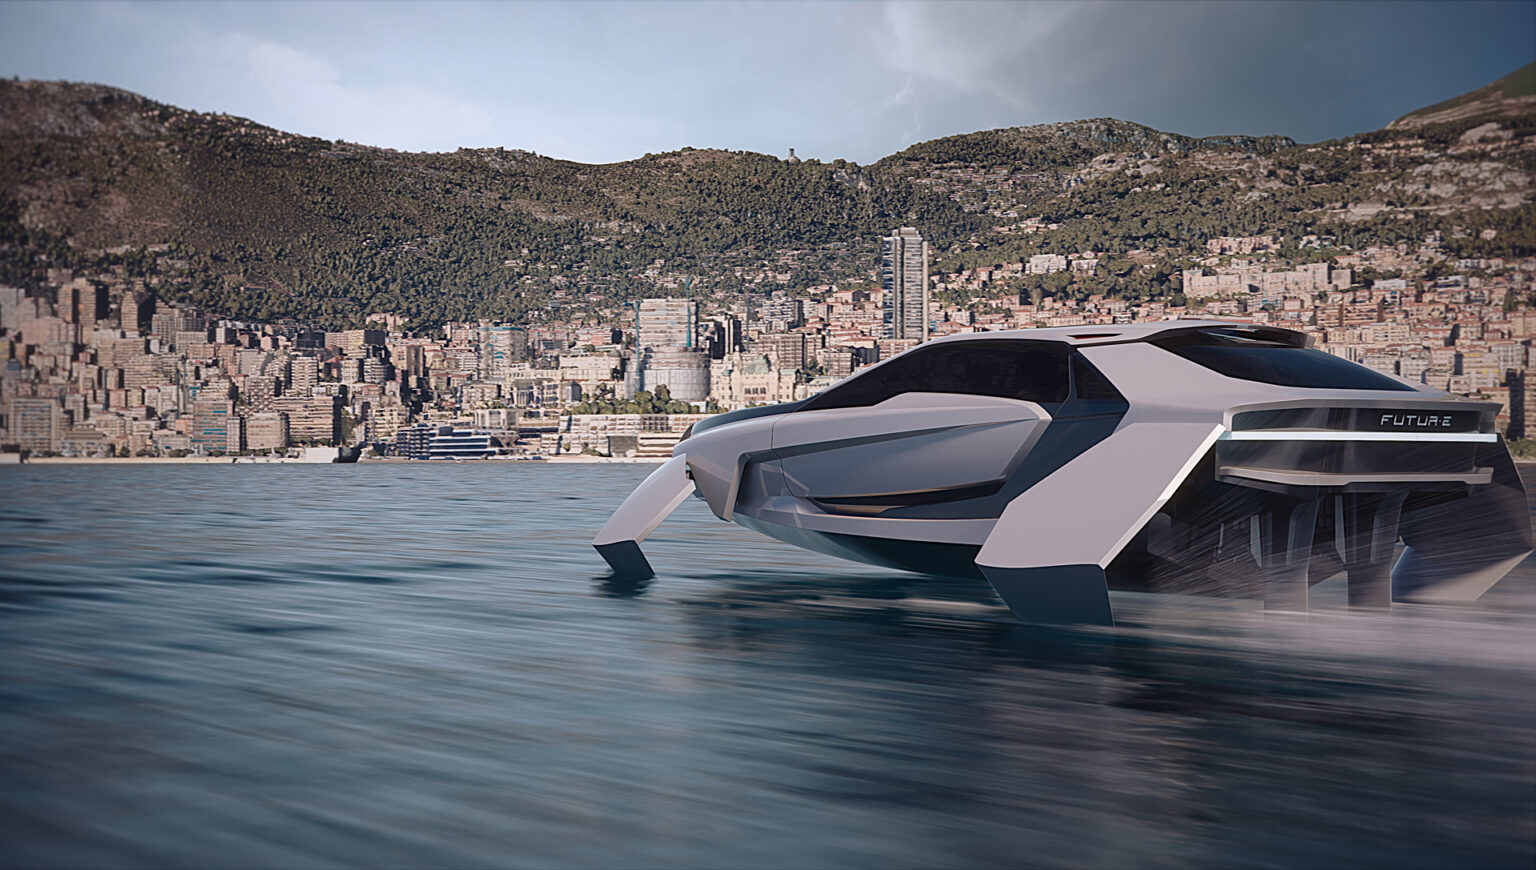 imagen 4 de Future-E, un yate como un deportivo que vuela sobre el agua (casi literalmente).